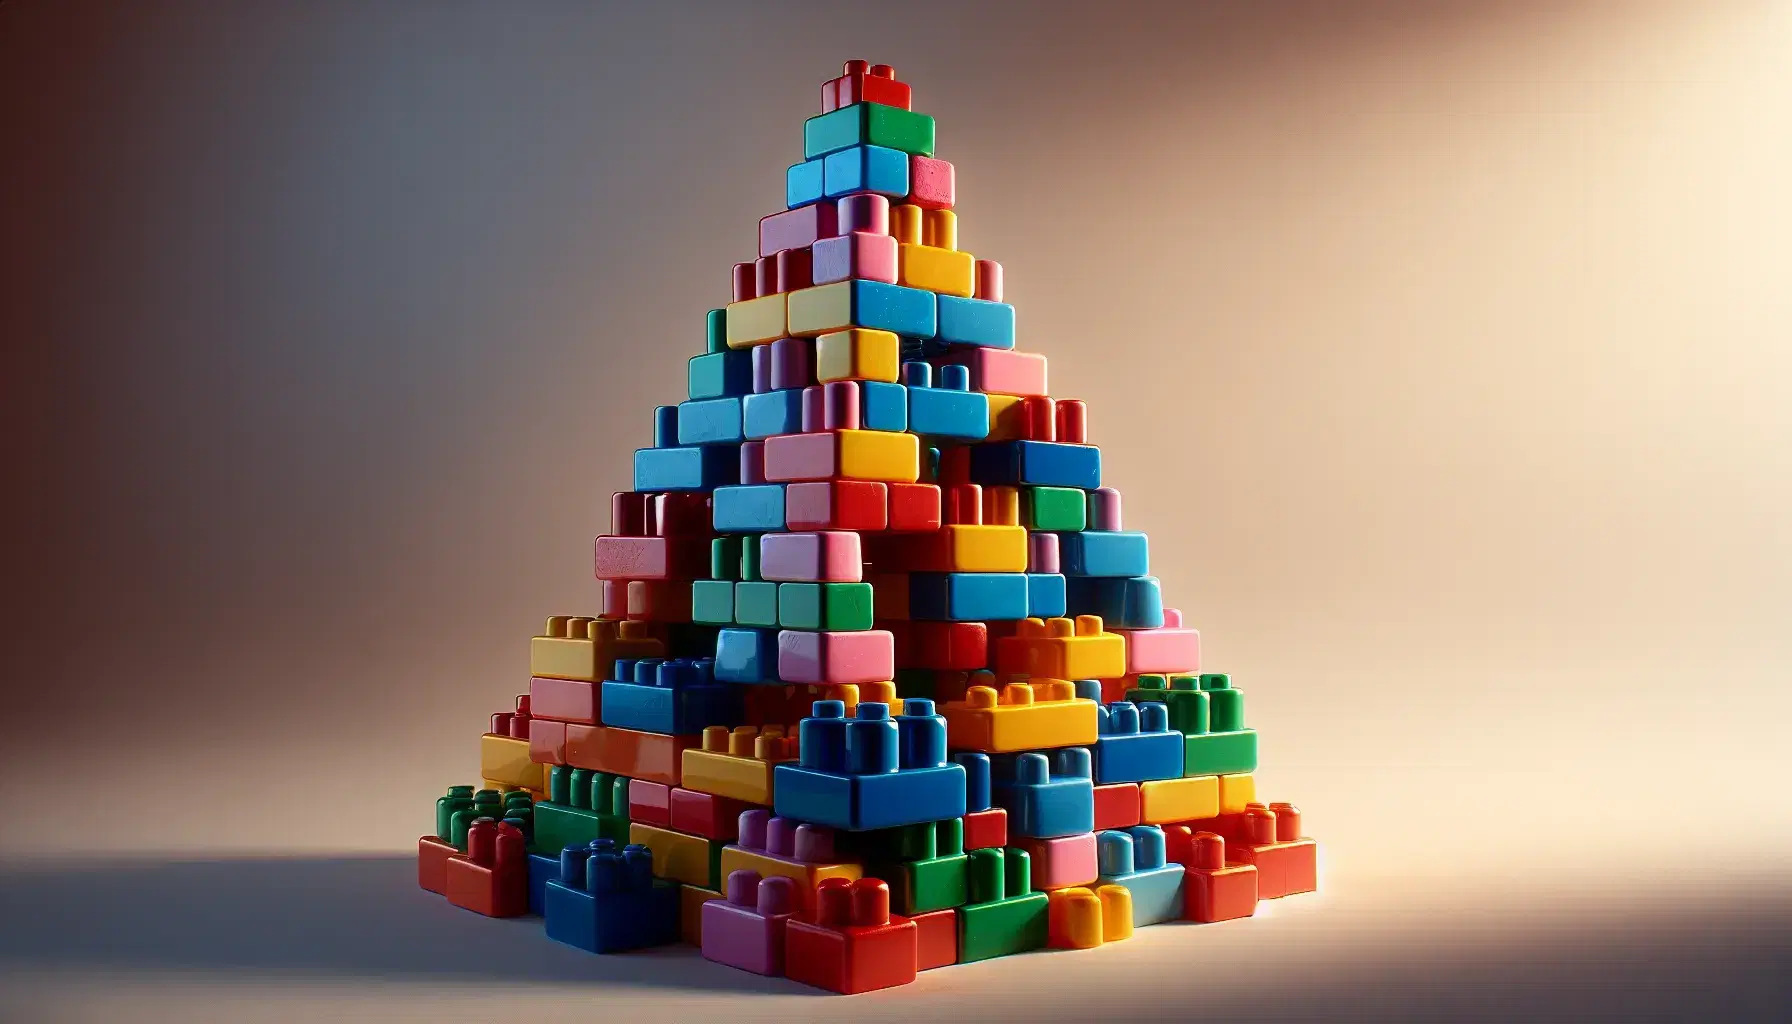 Torre de bloques de construcción plásticos coloridos en forma de pirámide con base azul, roja y verde, centro amarillo y naranja, y cima morada y rosa.